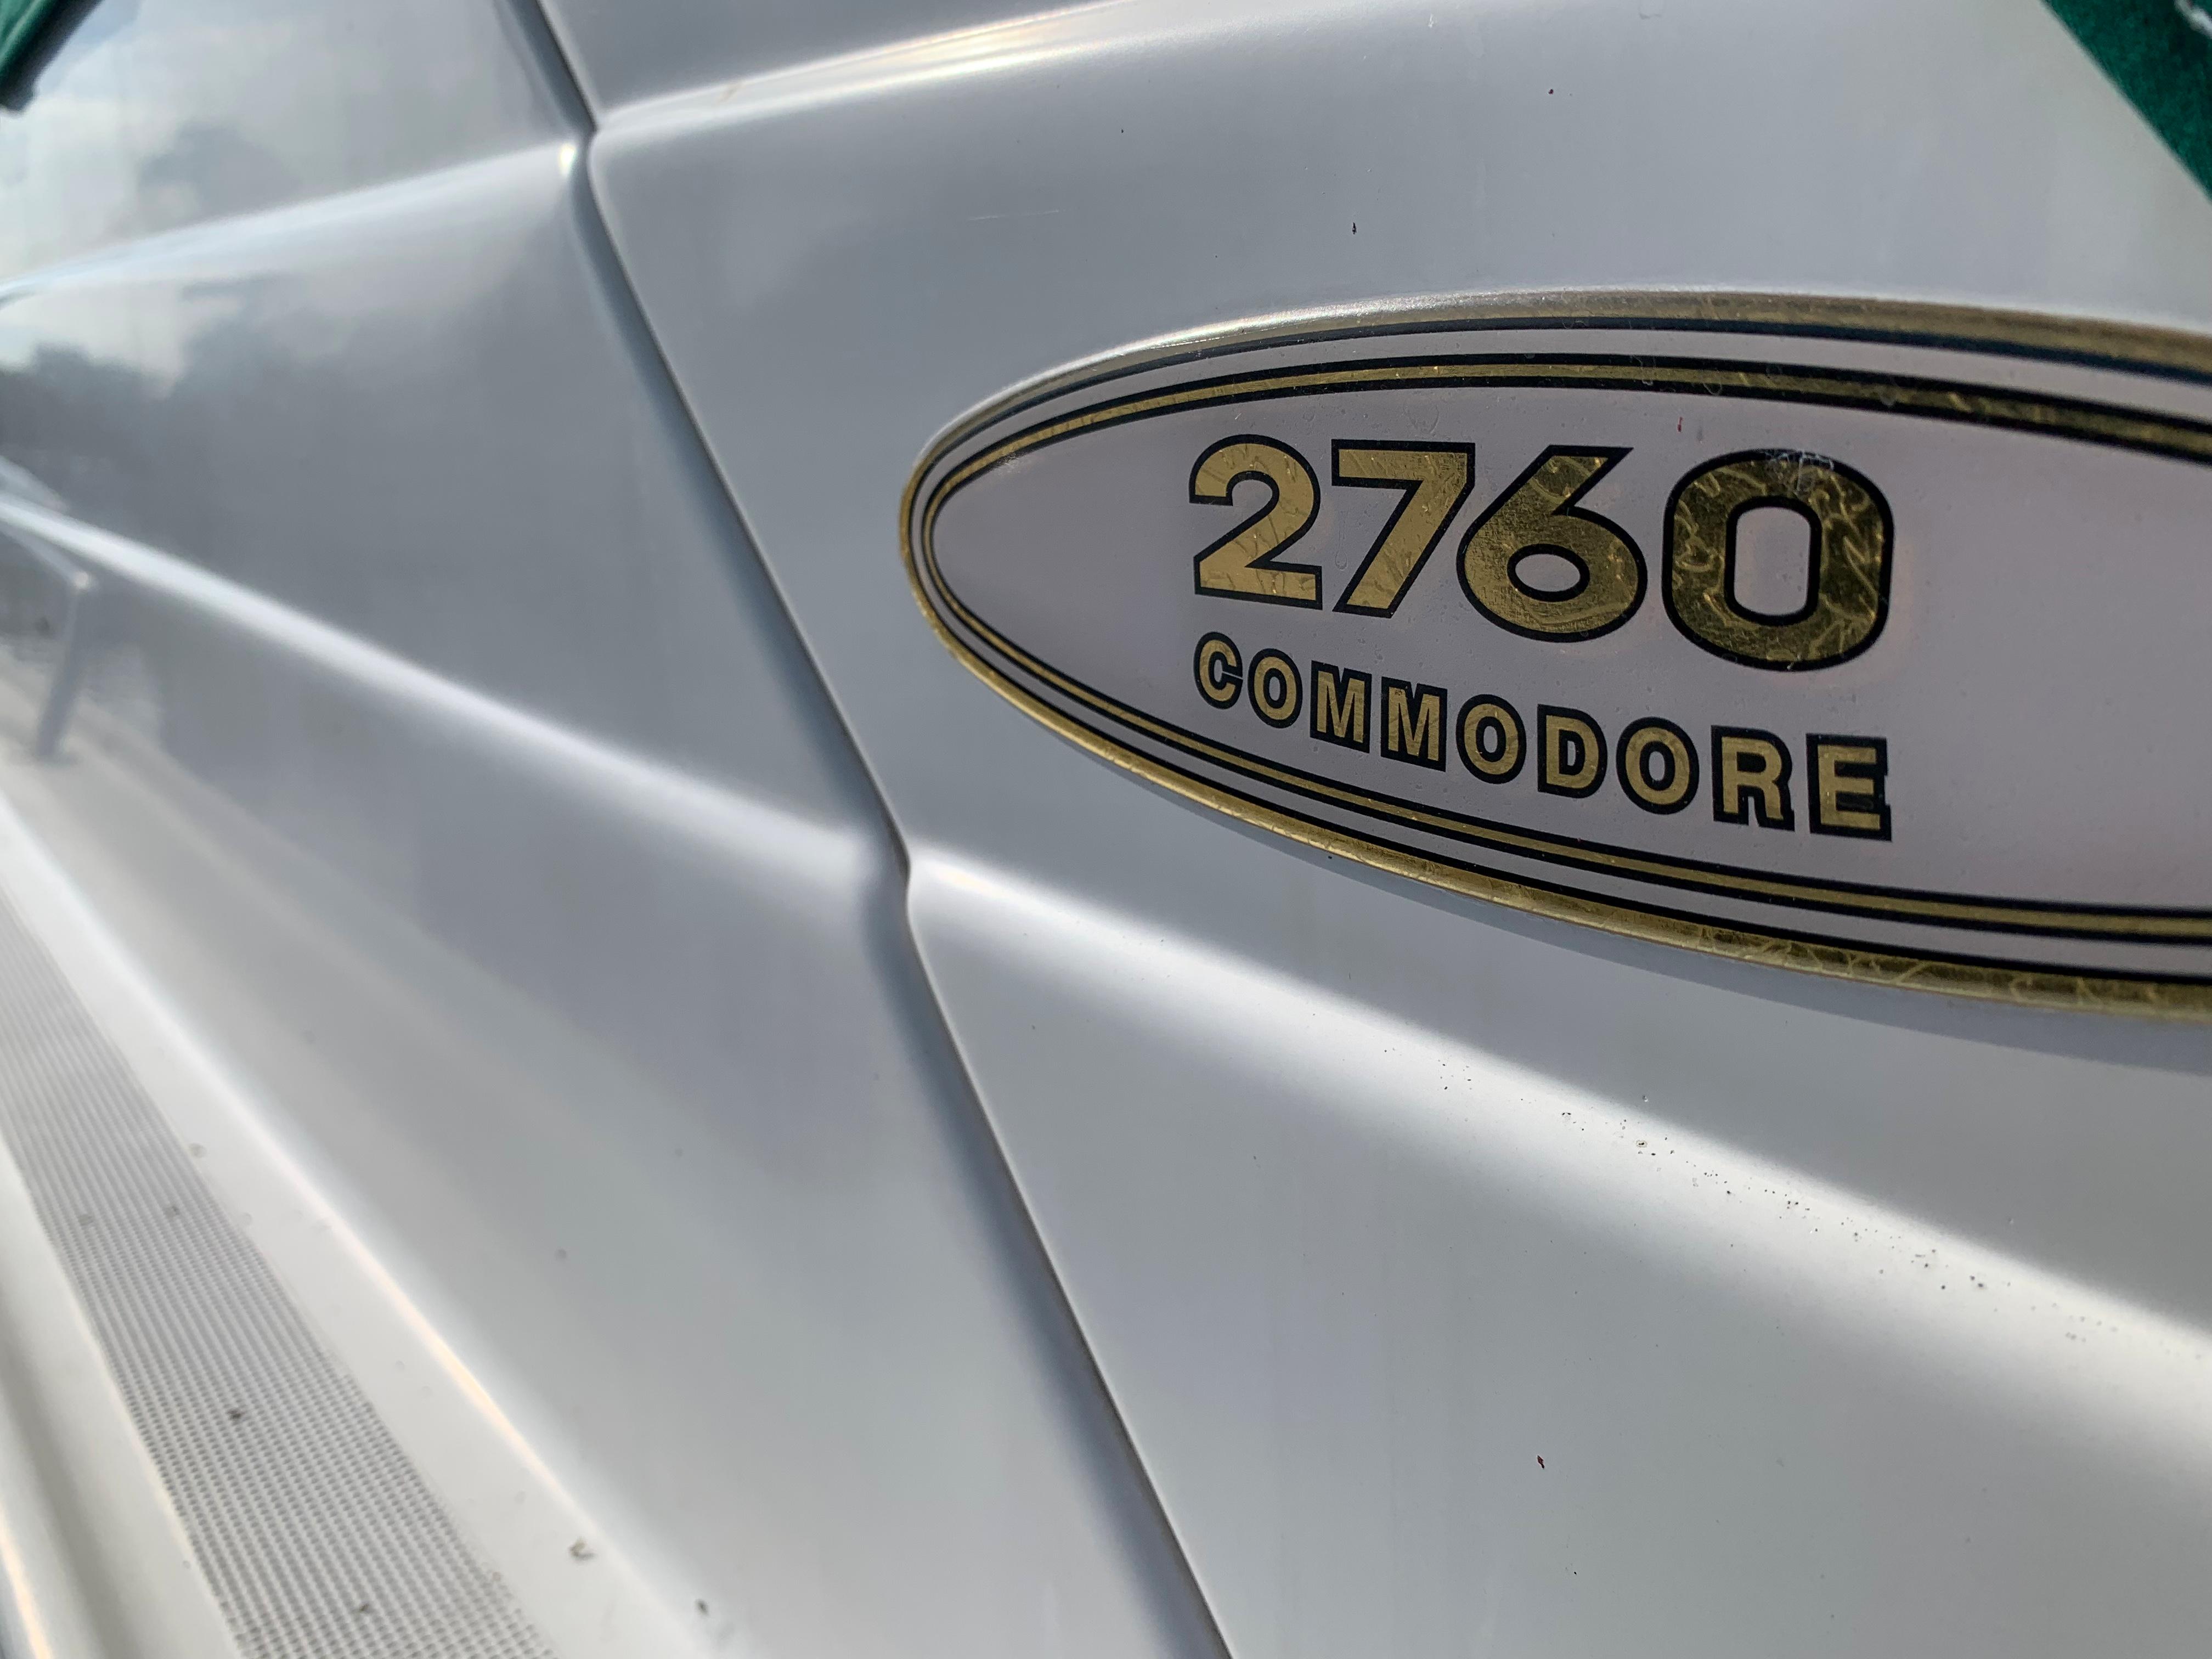 2001 Regal 2760 Commodore